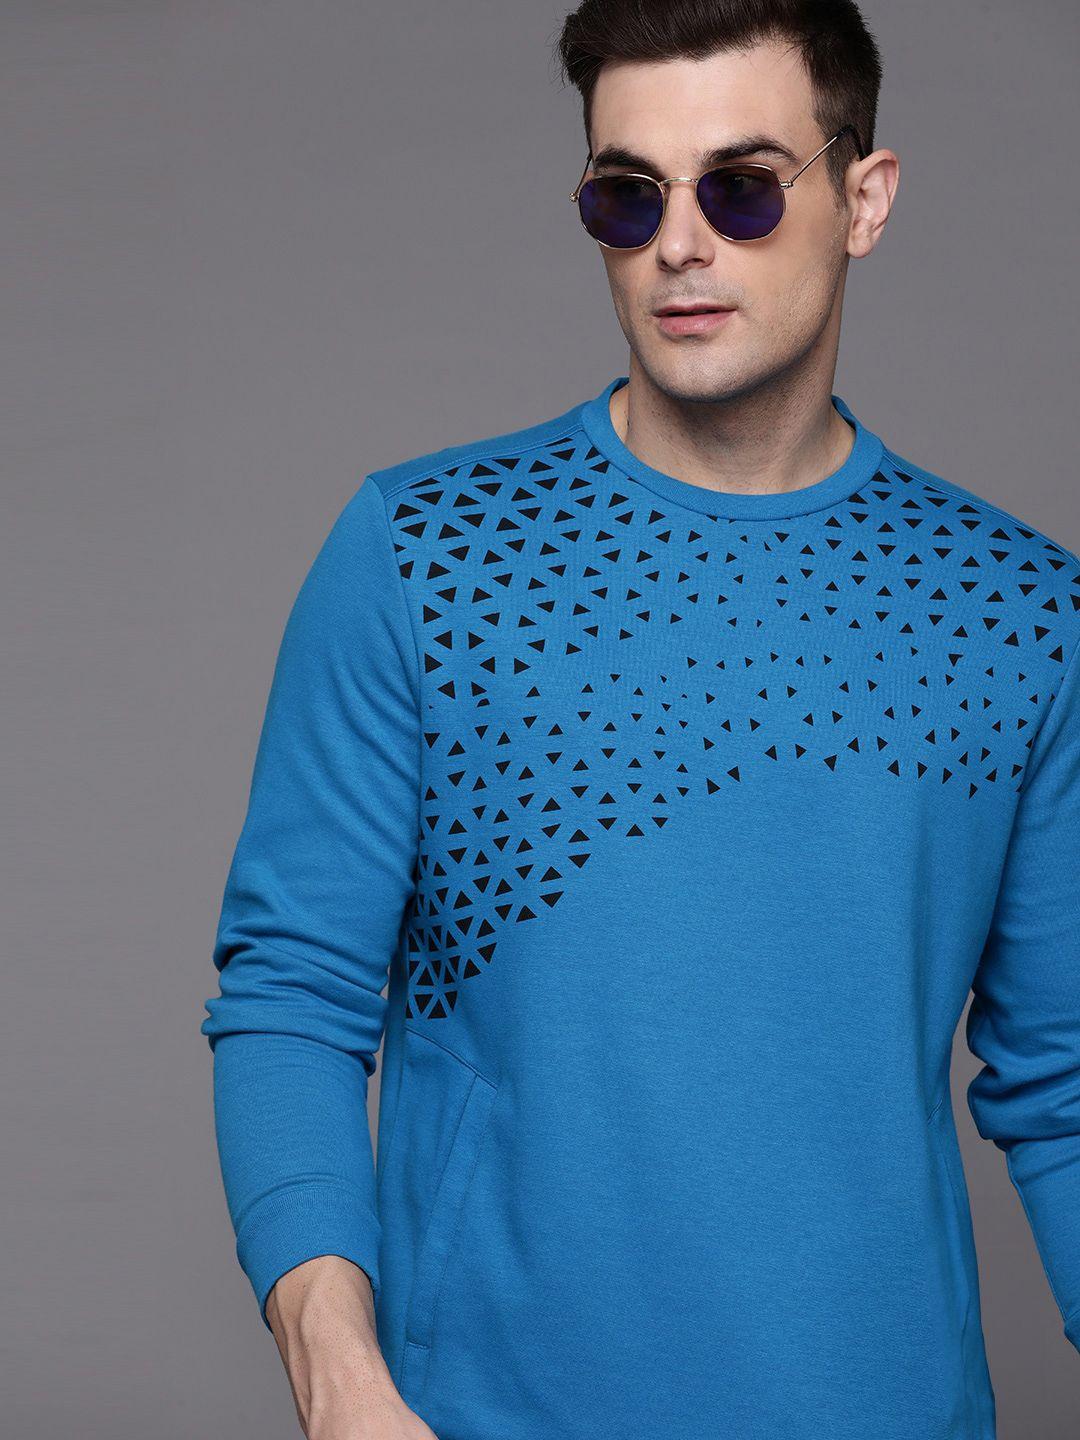 allen-solly-reflective-print-sweatshirt